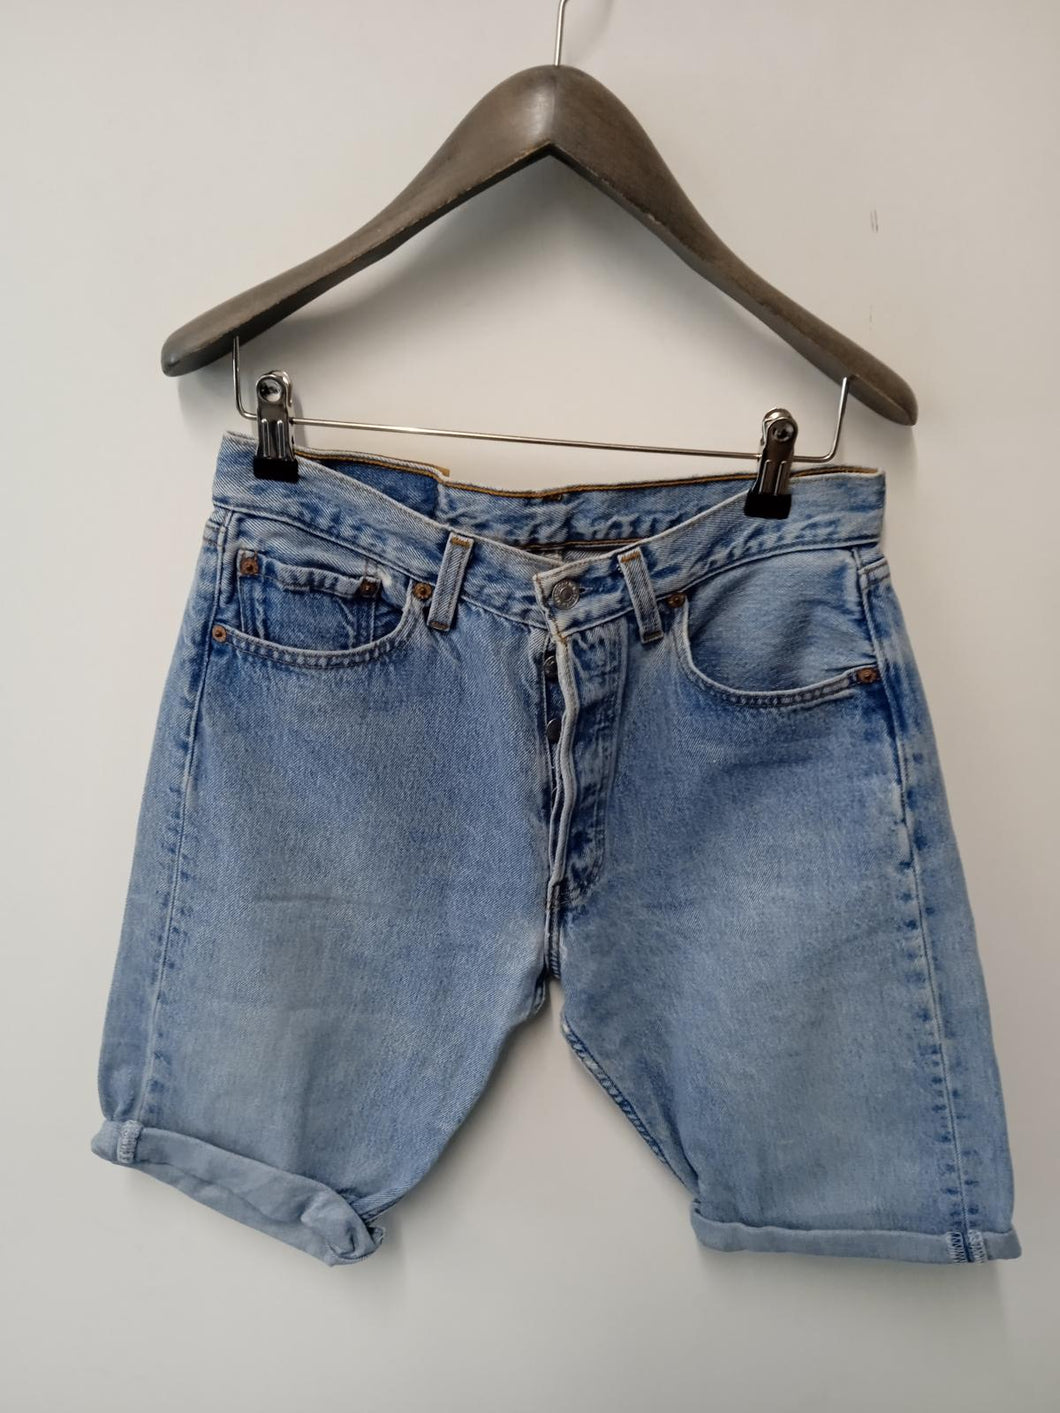 LEVIS Ladies Blue Cotton Button Fly 5-Pocket Jeans Shorts W29L10